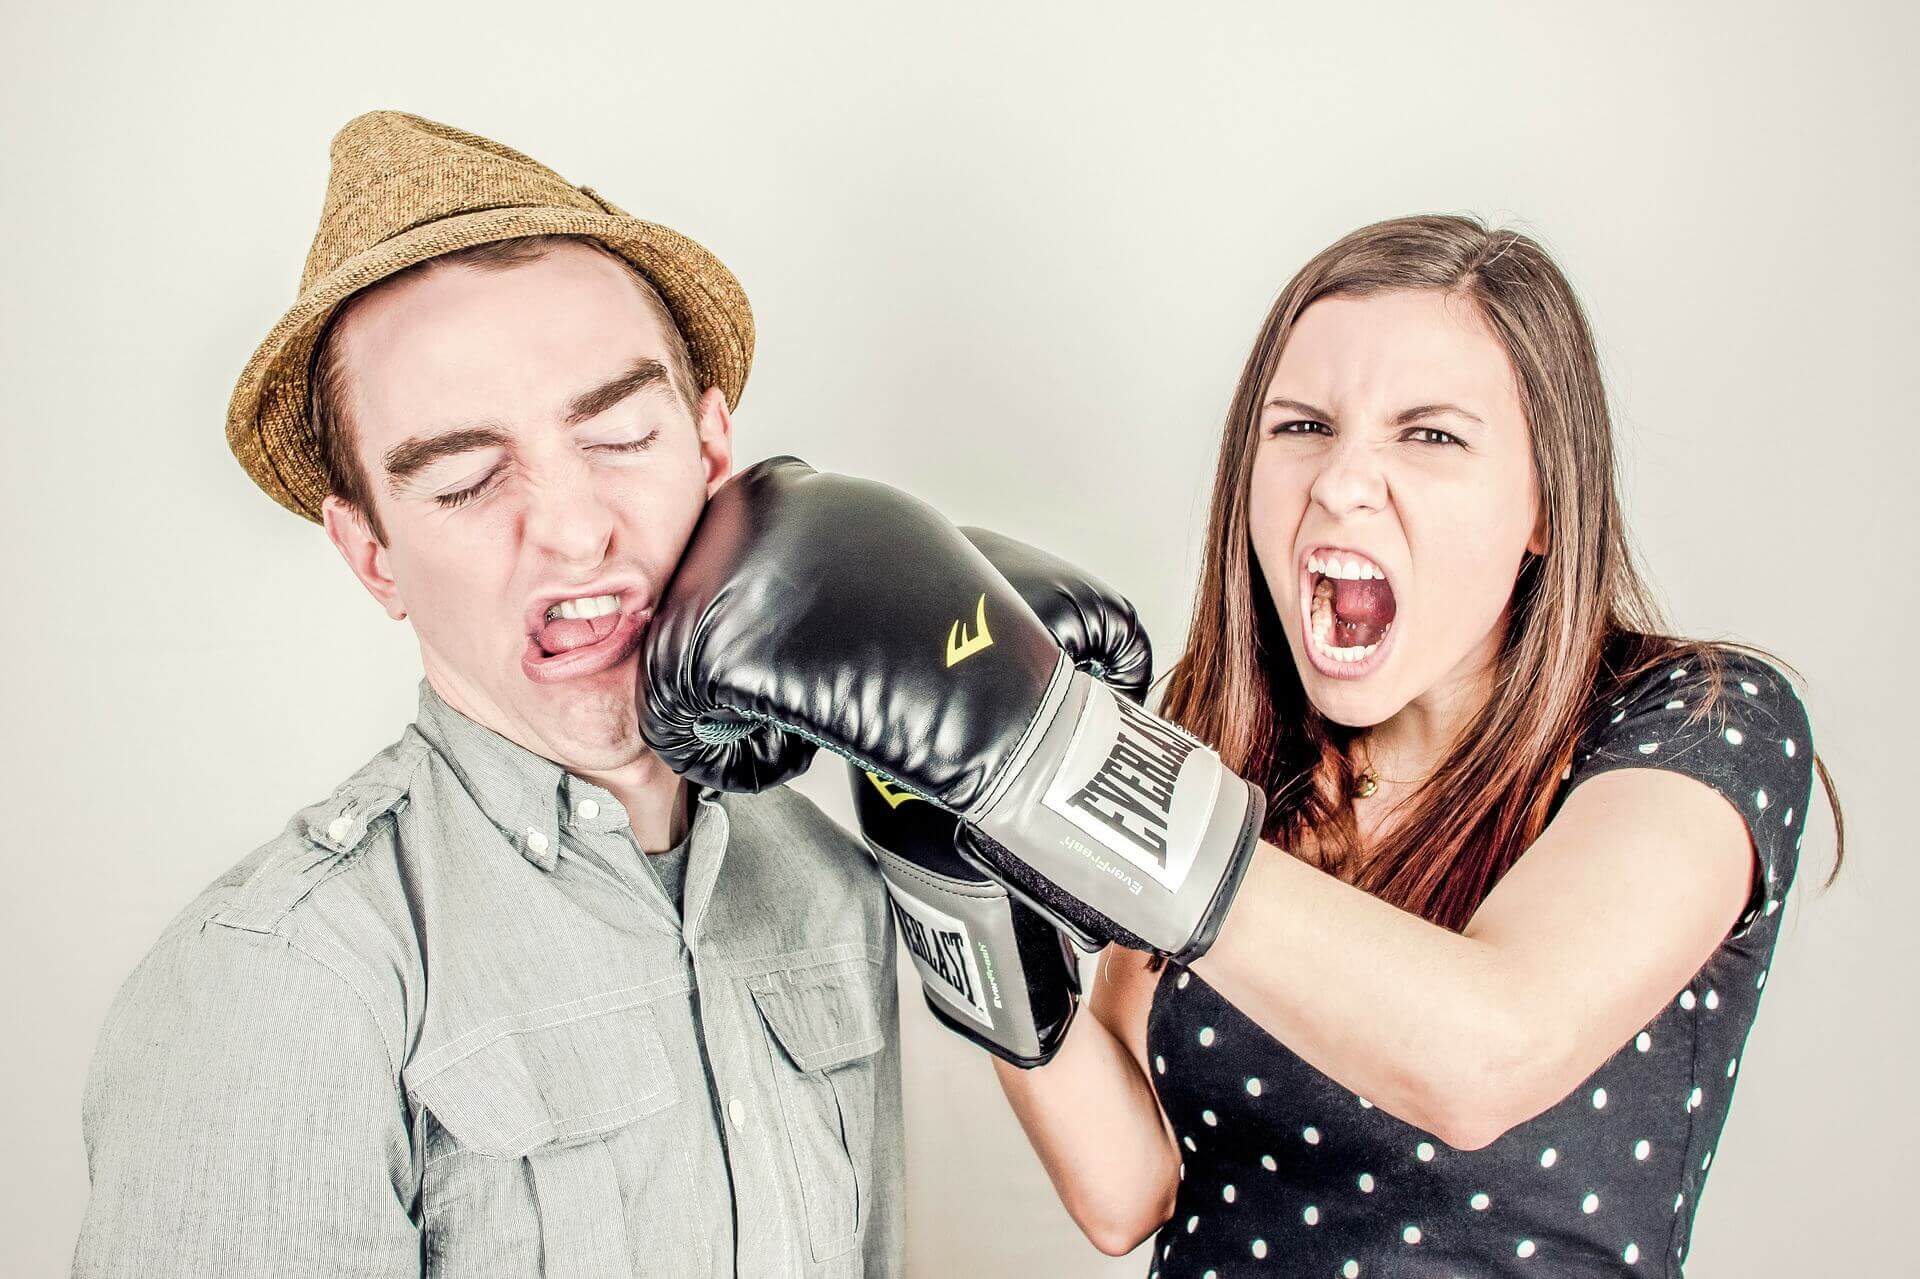 Ständig Streit mit dem Partner? 3 Tipps für mehr Harmonie